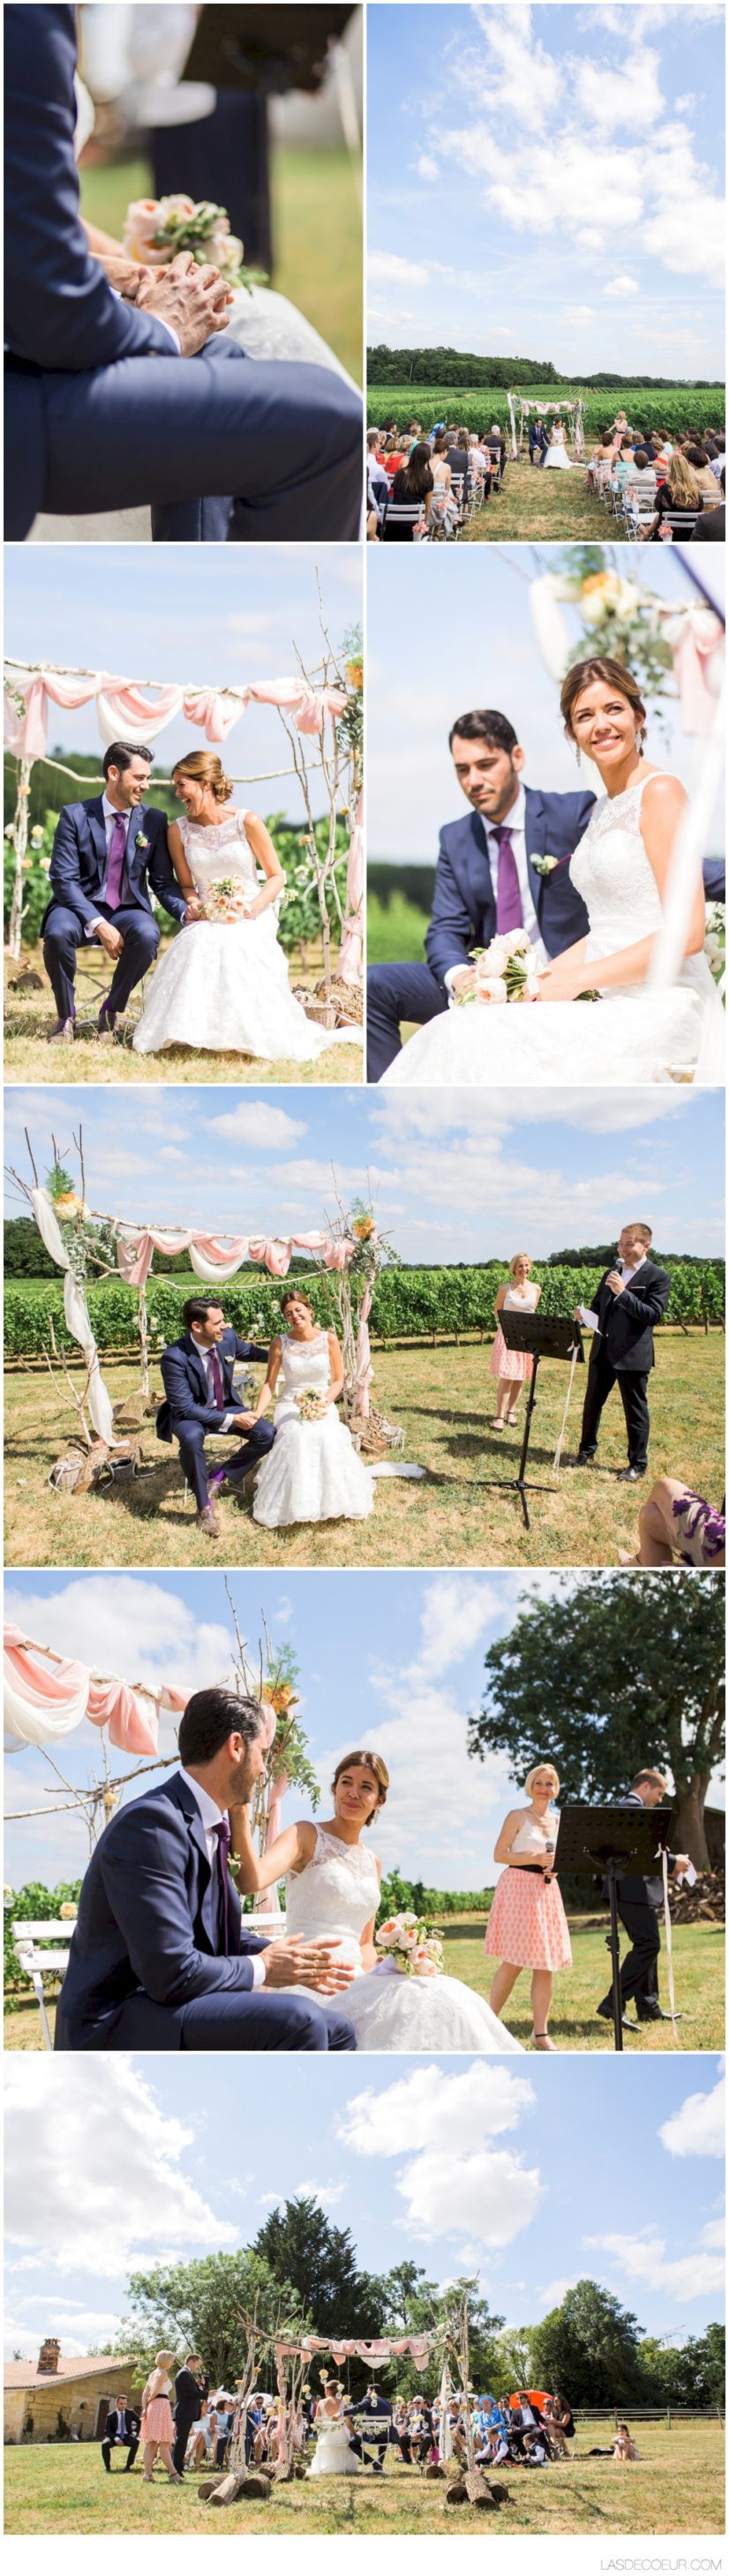 photographe mariage Bordeaux cérémonie laïque